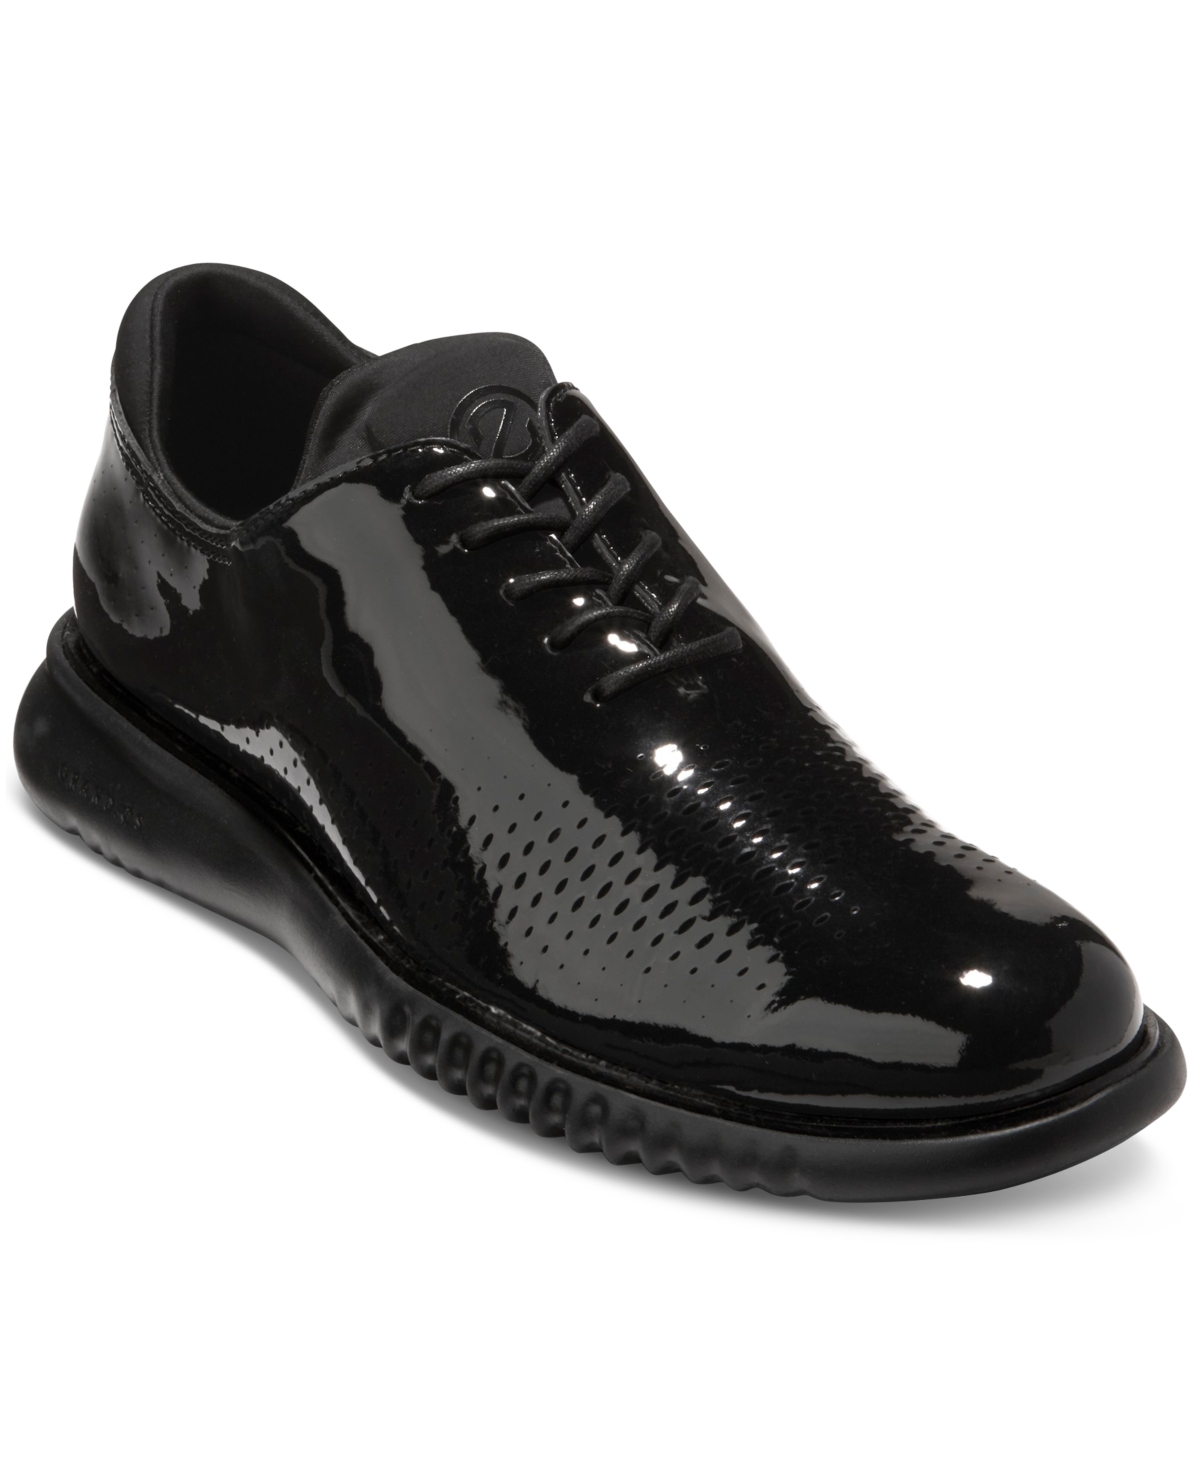 Cole Haan Men's 2.zerãgrand Laser Wingtip Oxford Shoes In Black Patent